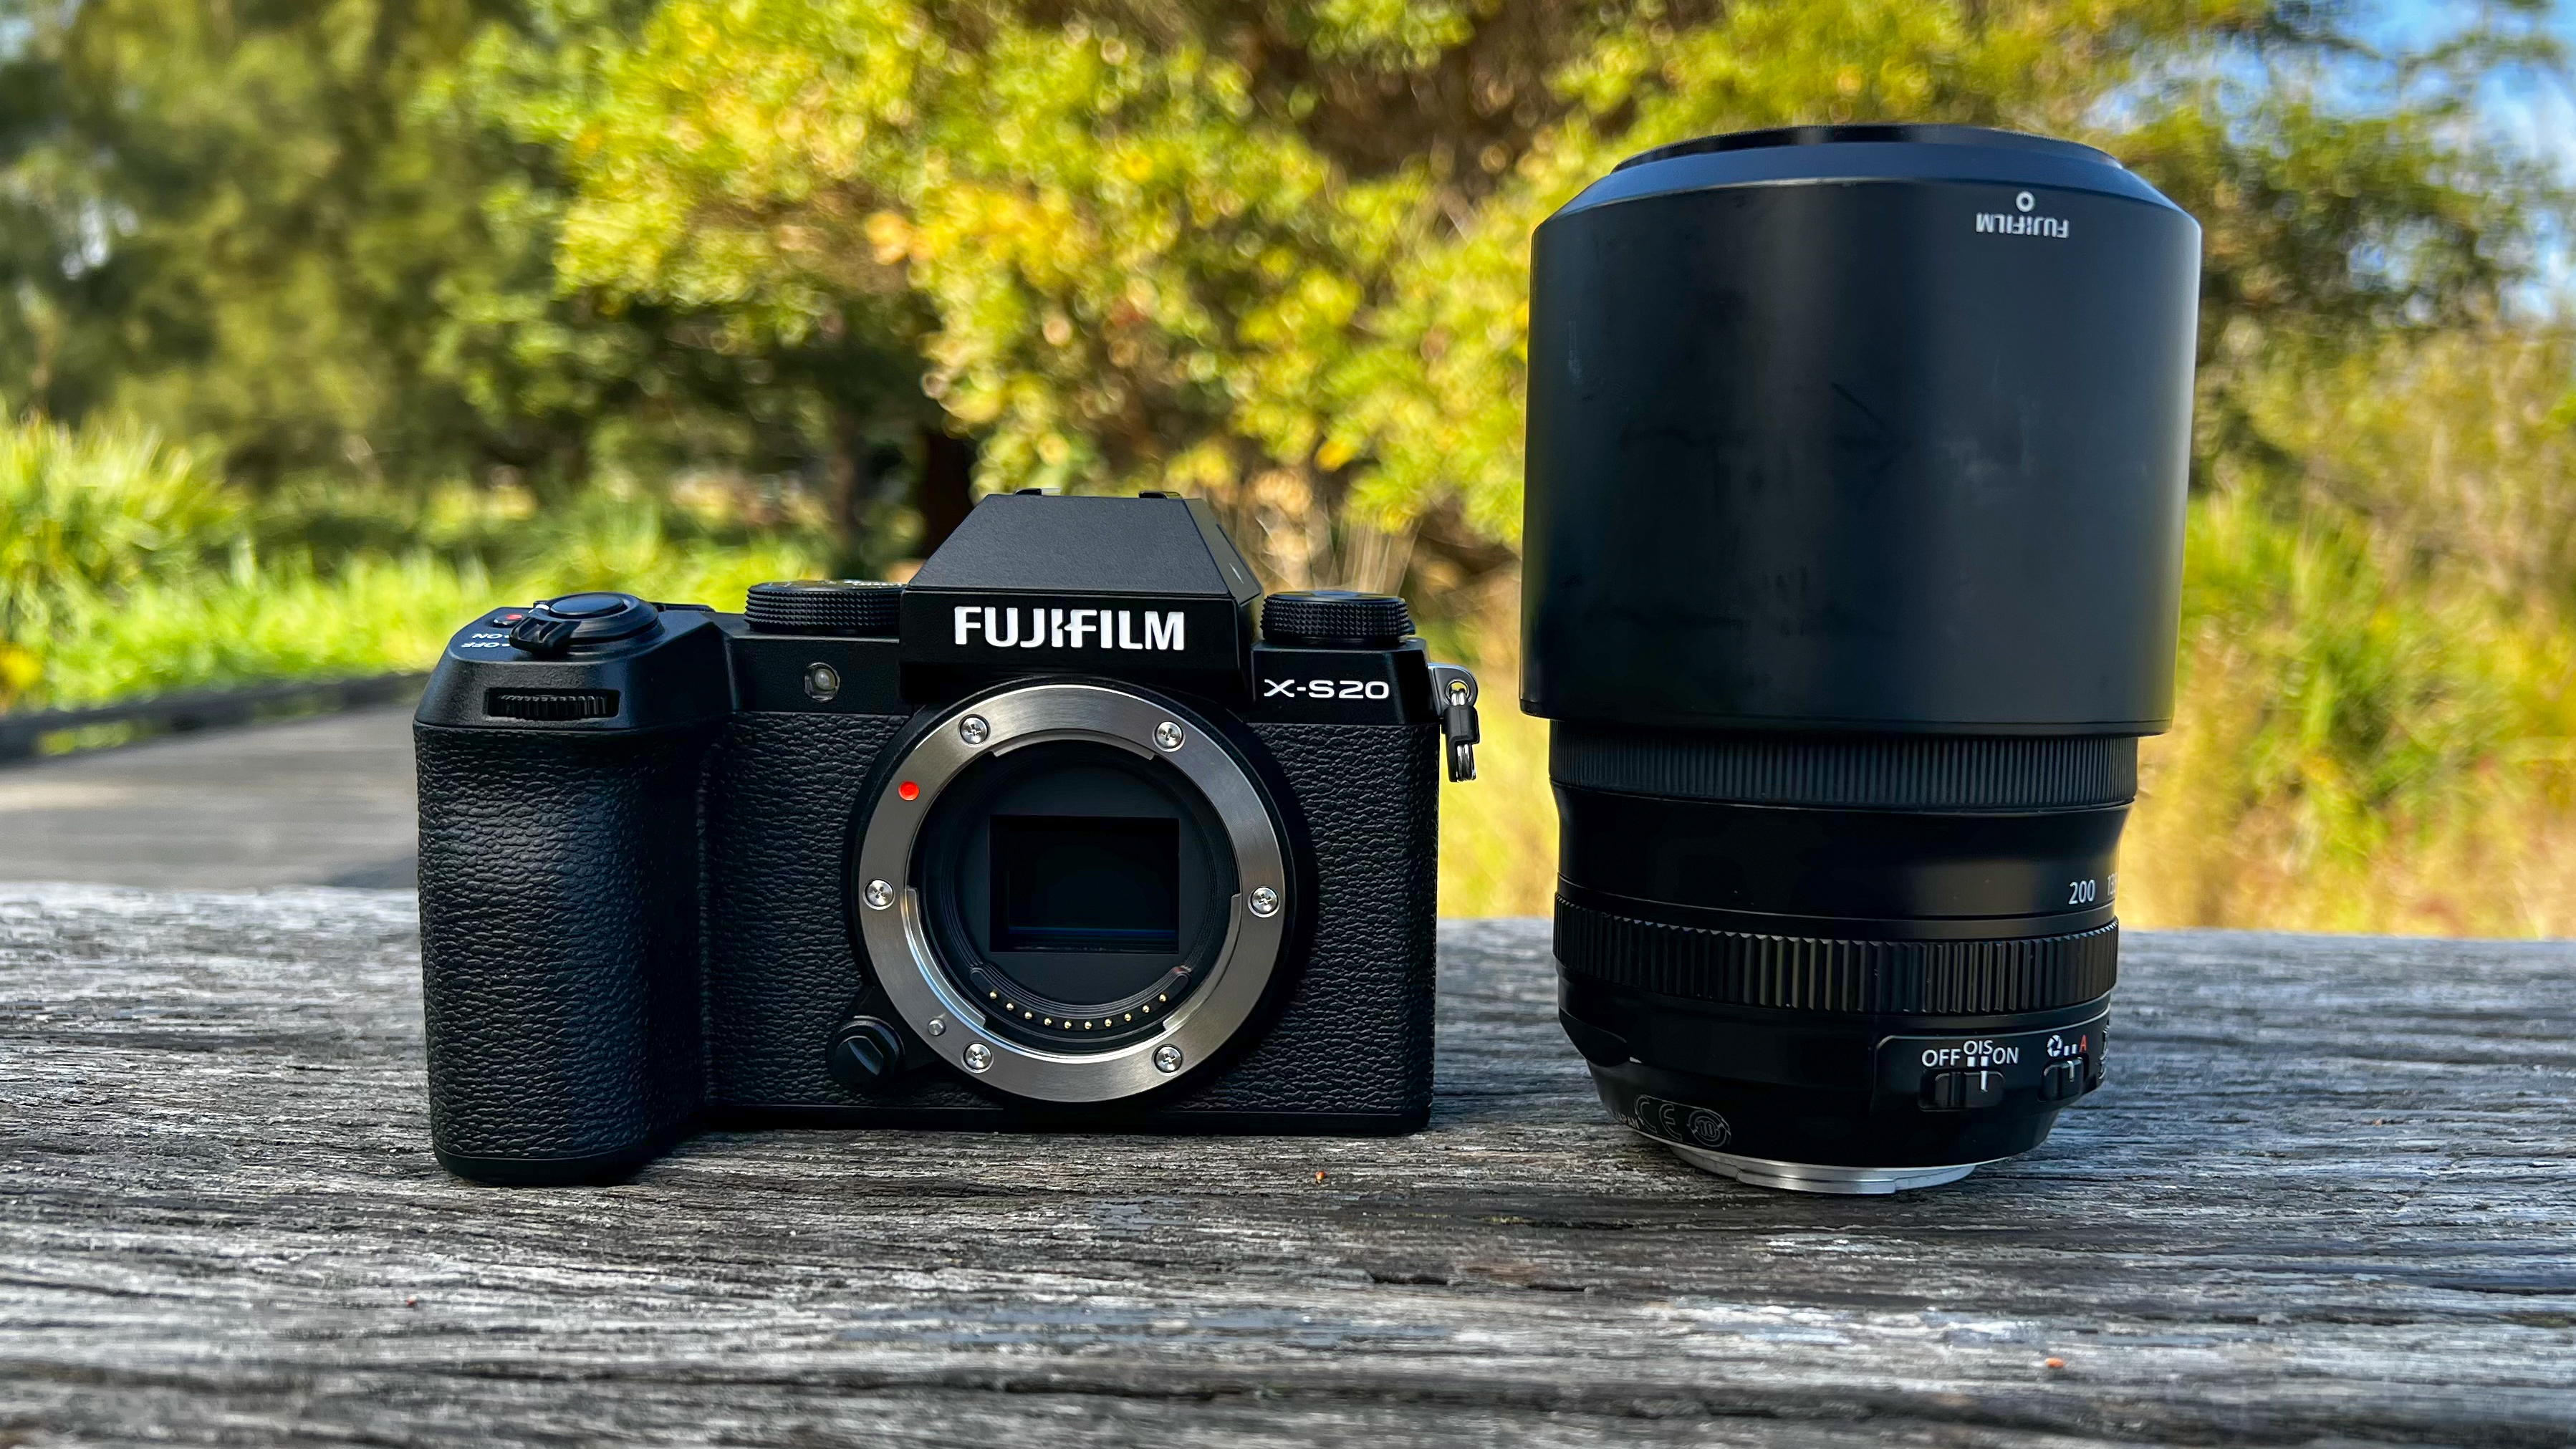 O corpo da Fujifilm X-S20 ao lado de uma lente de kit